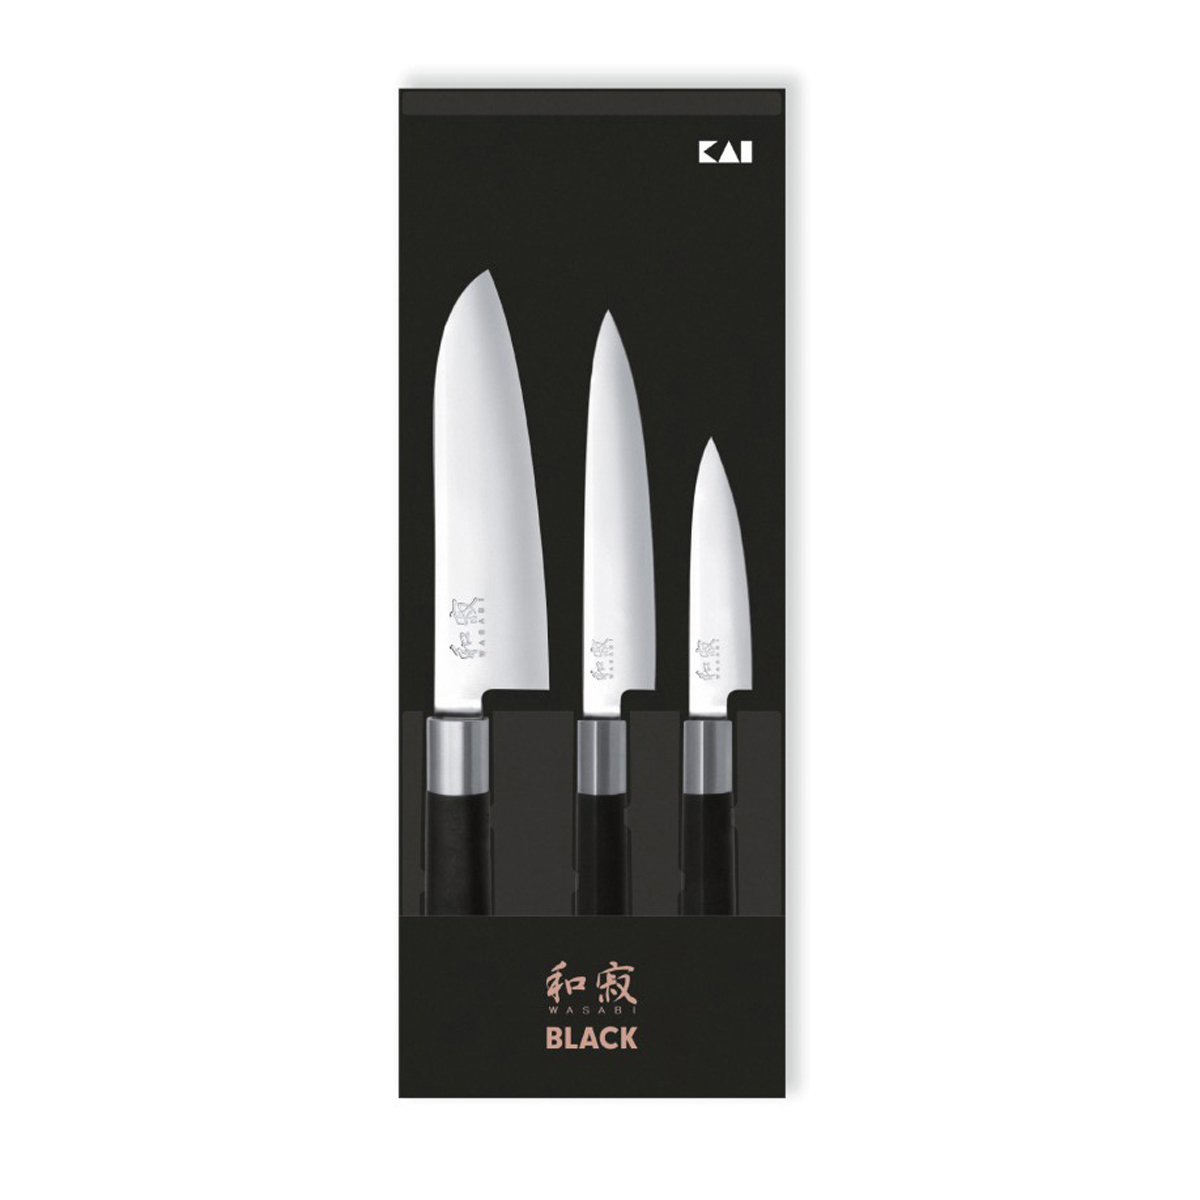 KAI Wasabi black 3-teiliges Messerset Japan